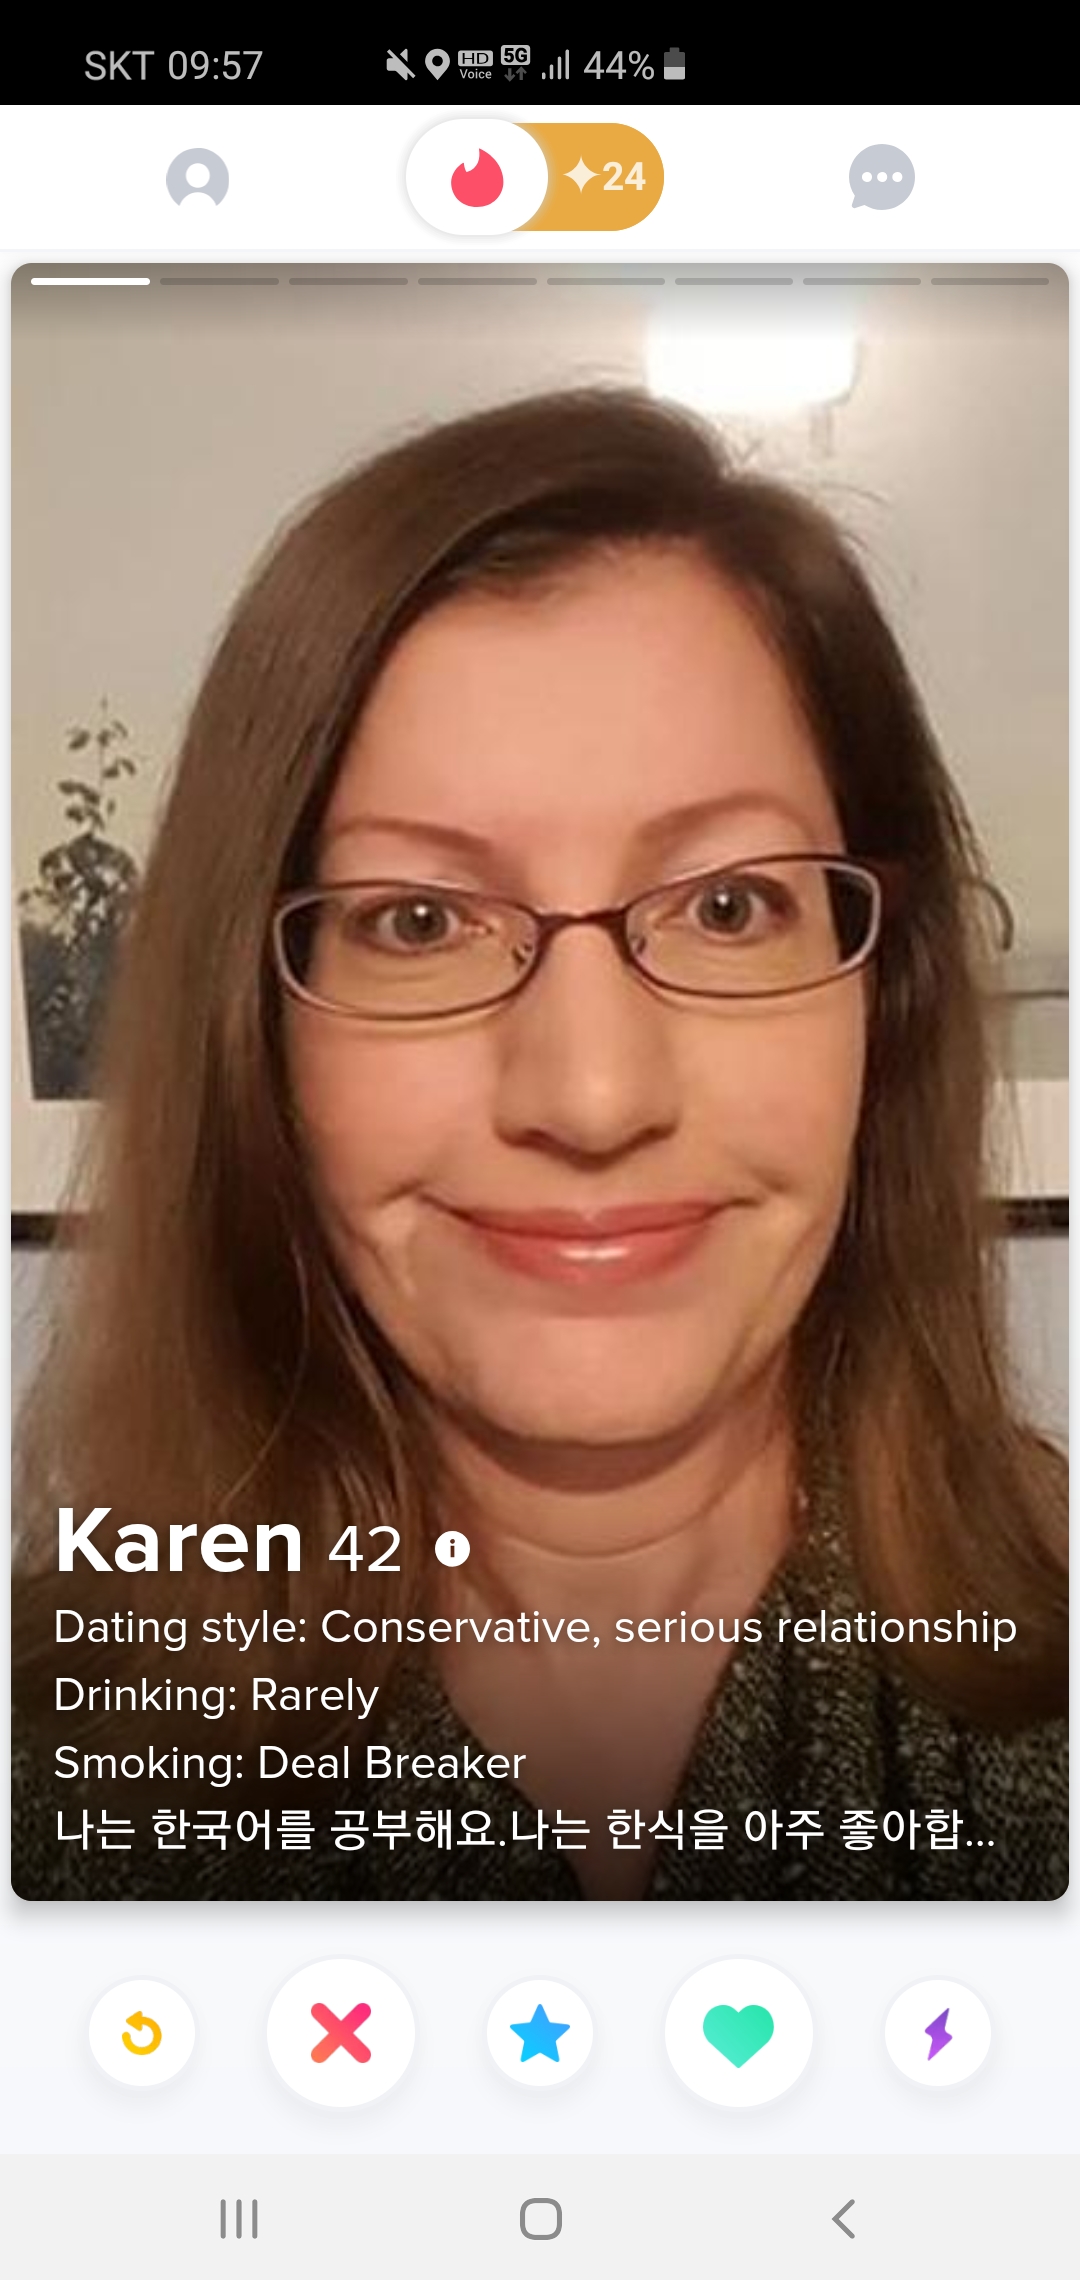 hilarious photo of typical Karen, but on Tinder